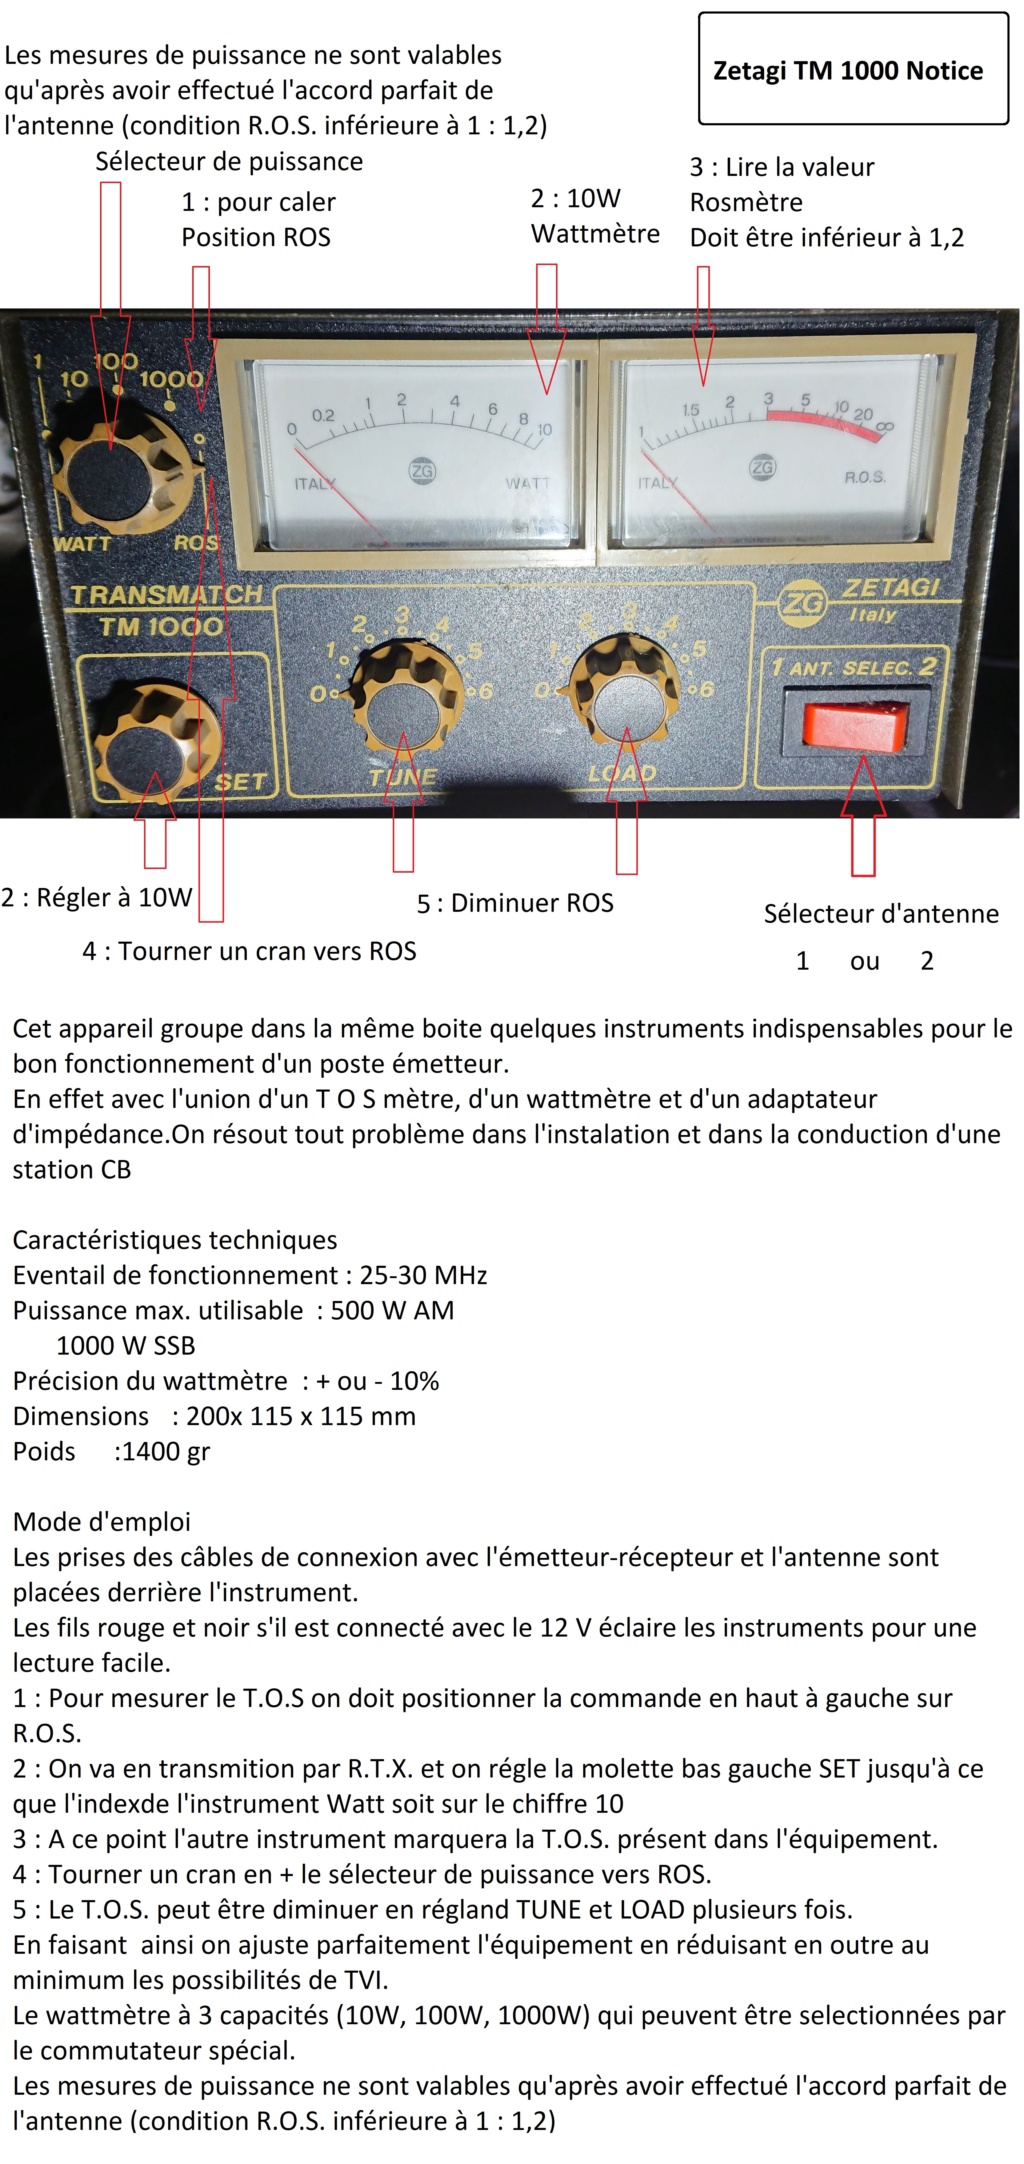 Zetagi Transmatch TM 1000 (Tosmètre/Wattmètre/Matcher) - Page 2 Zetagi11